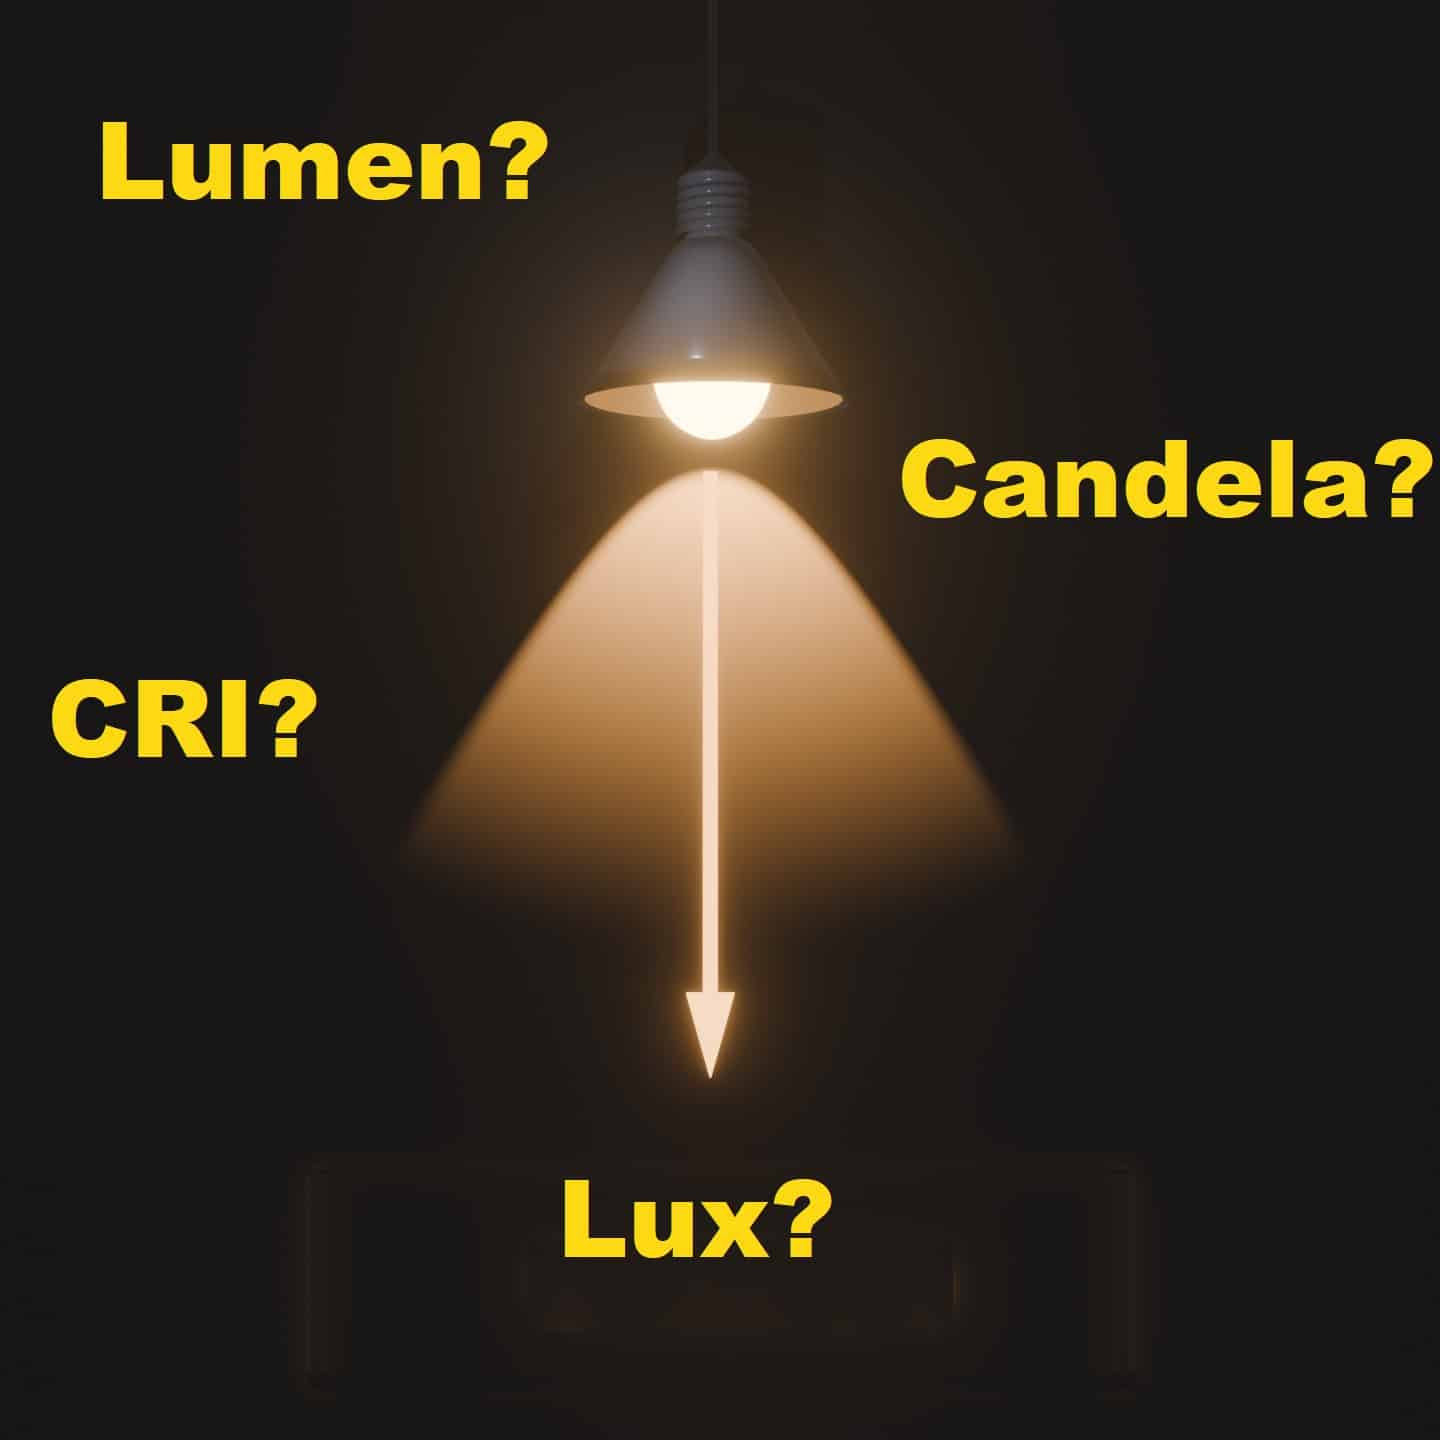 Lumen, Candela, Lux, CRI als Fragestellung im Bild